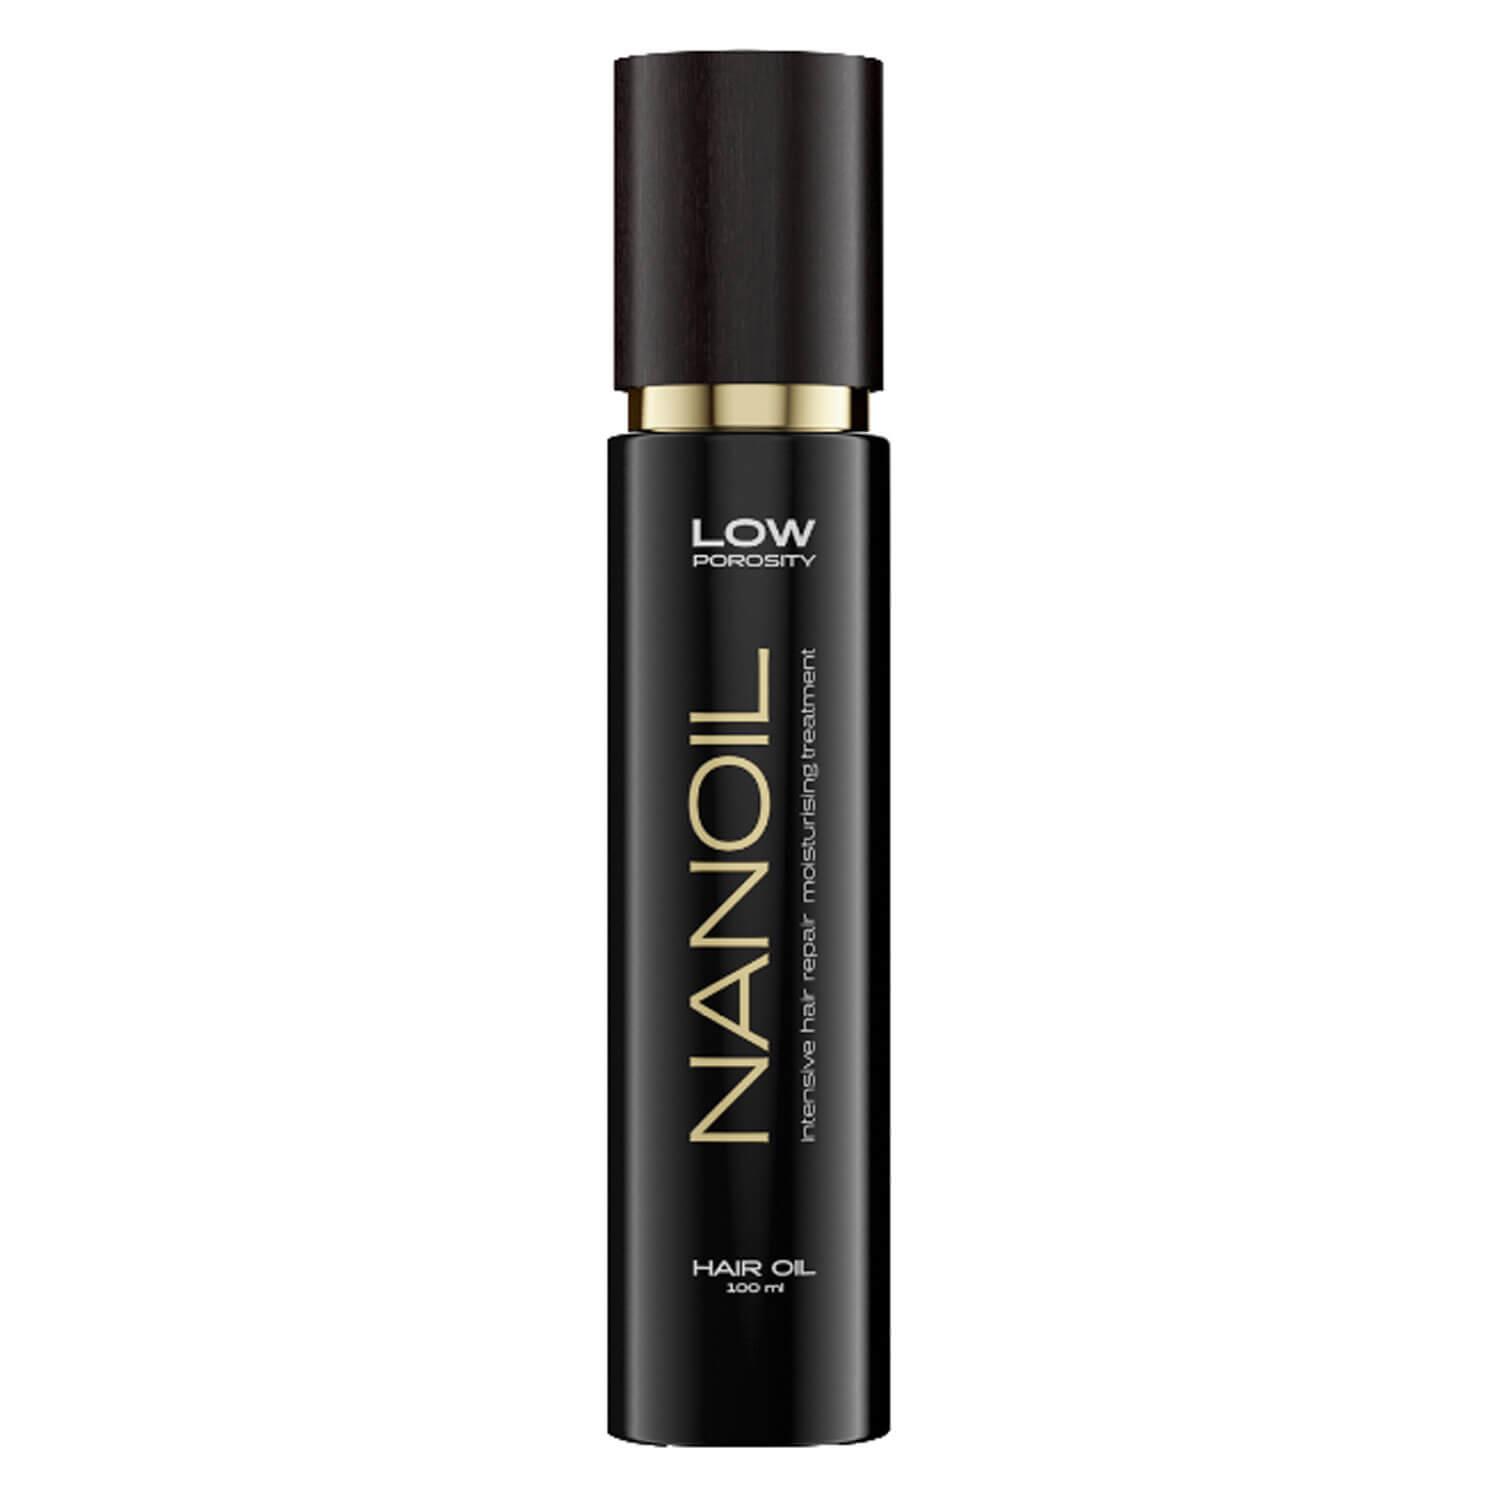 Nanoil - Low Porosity Hair Oil